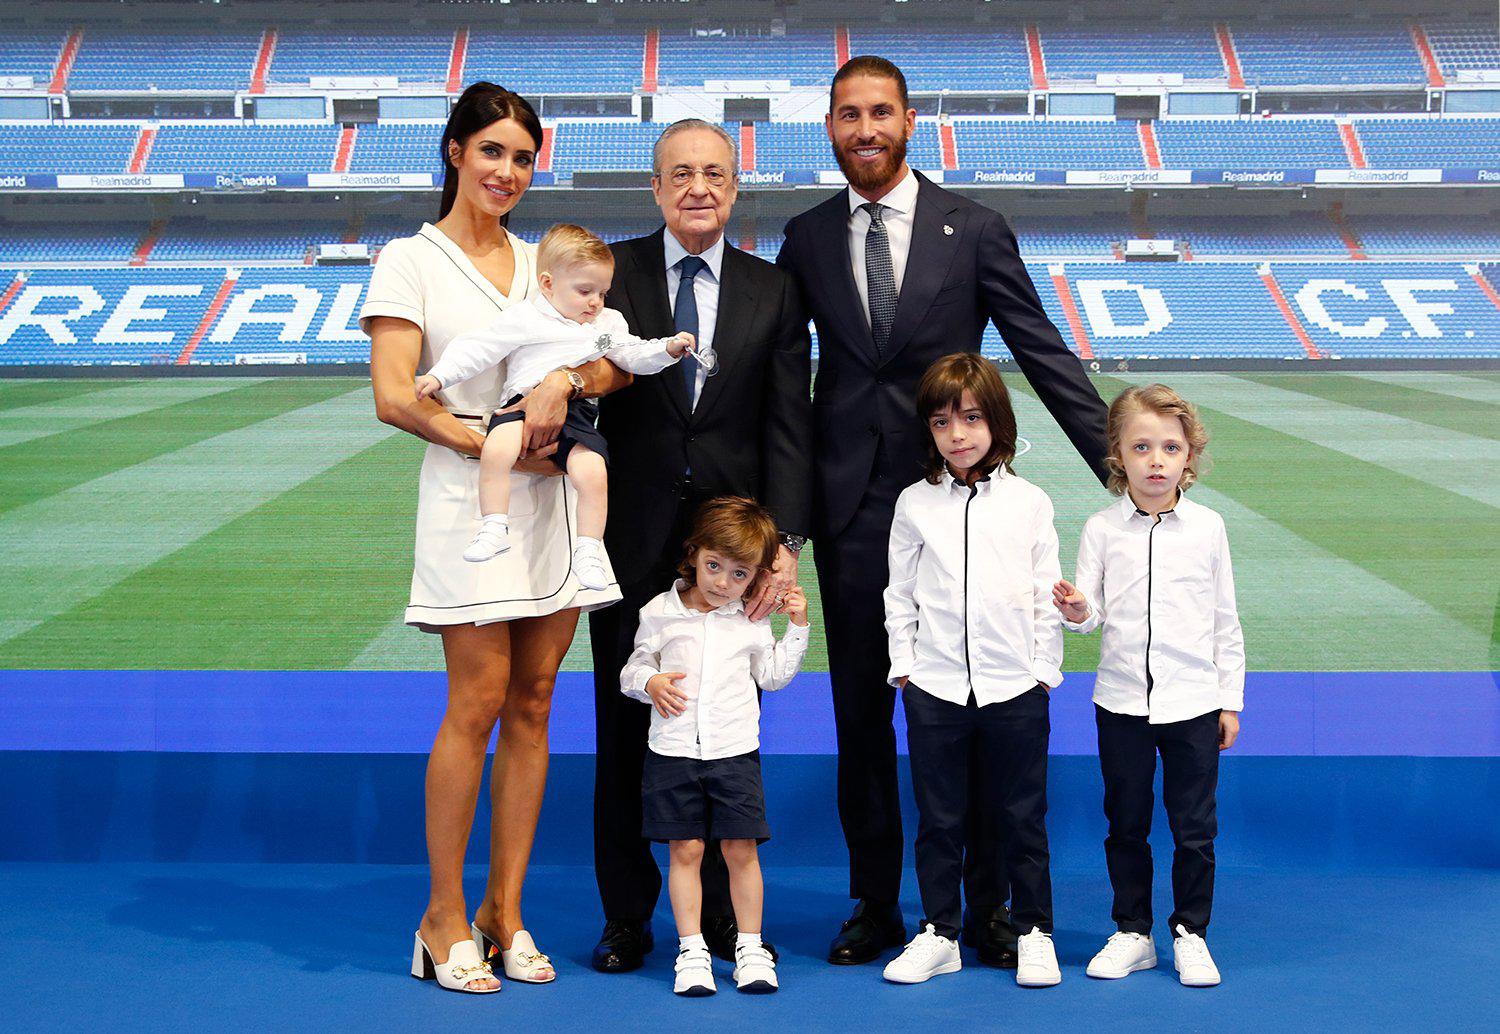 $!Acepto la oferta y me dicen que ha caducado: Sergio Ramos explica su adiós al Real Madrid